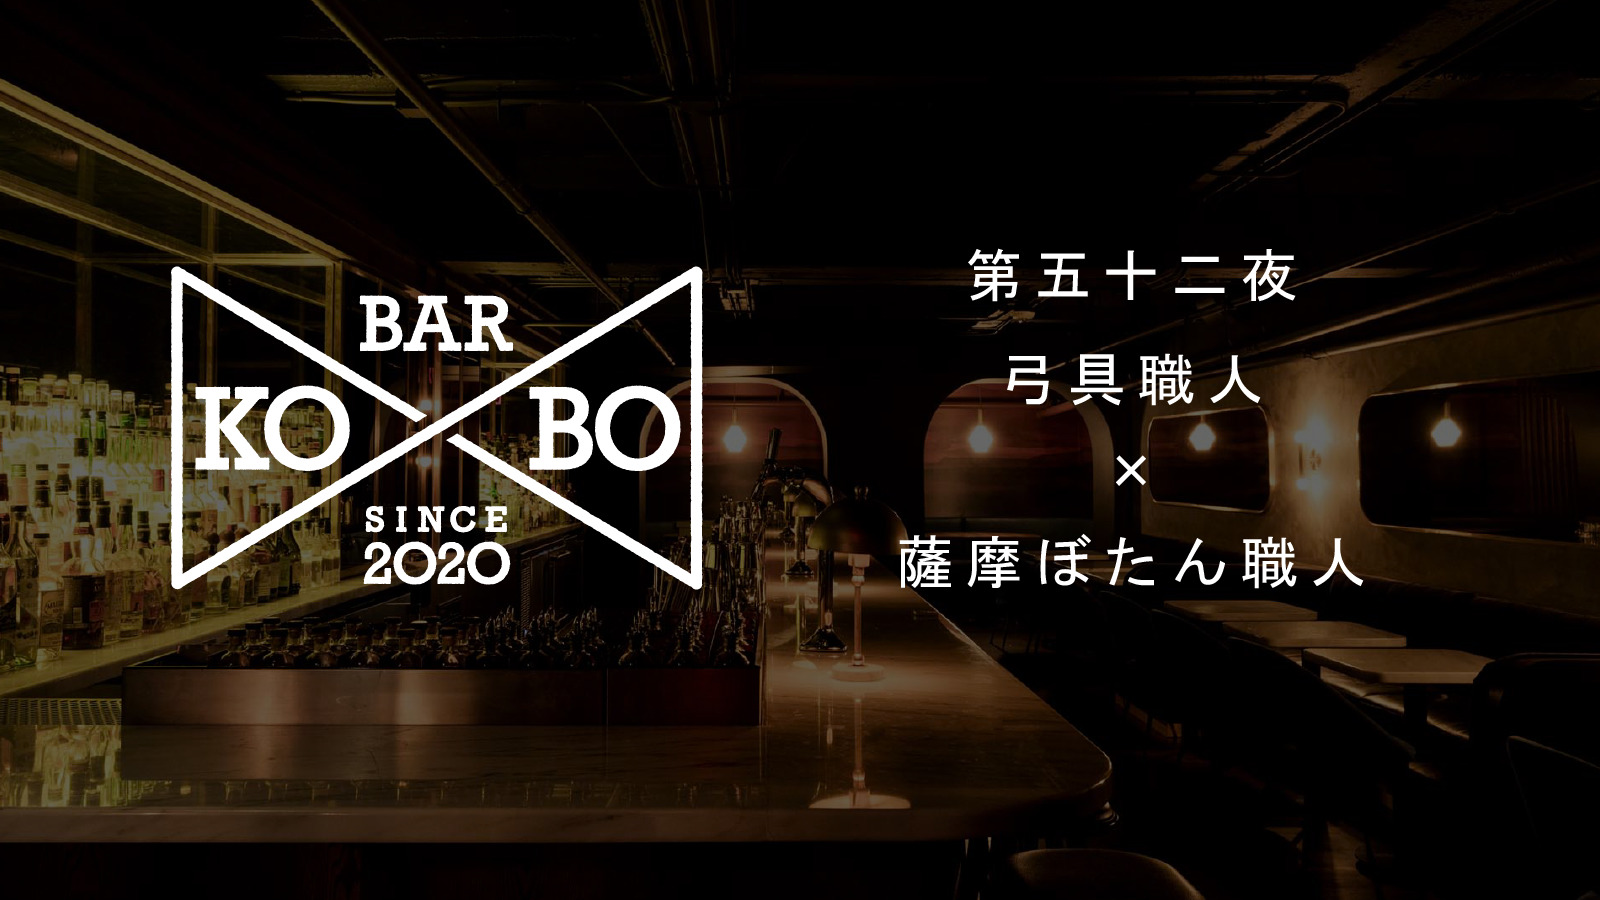 【Bar KO-BO 第五十二夜】薩摩ぼたん職人×弓具職人